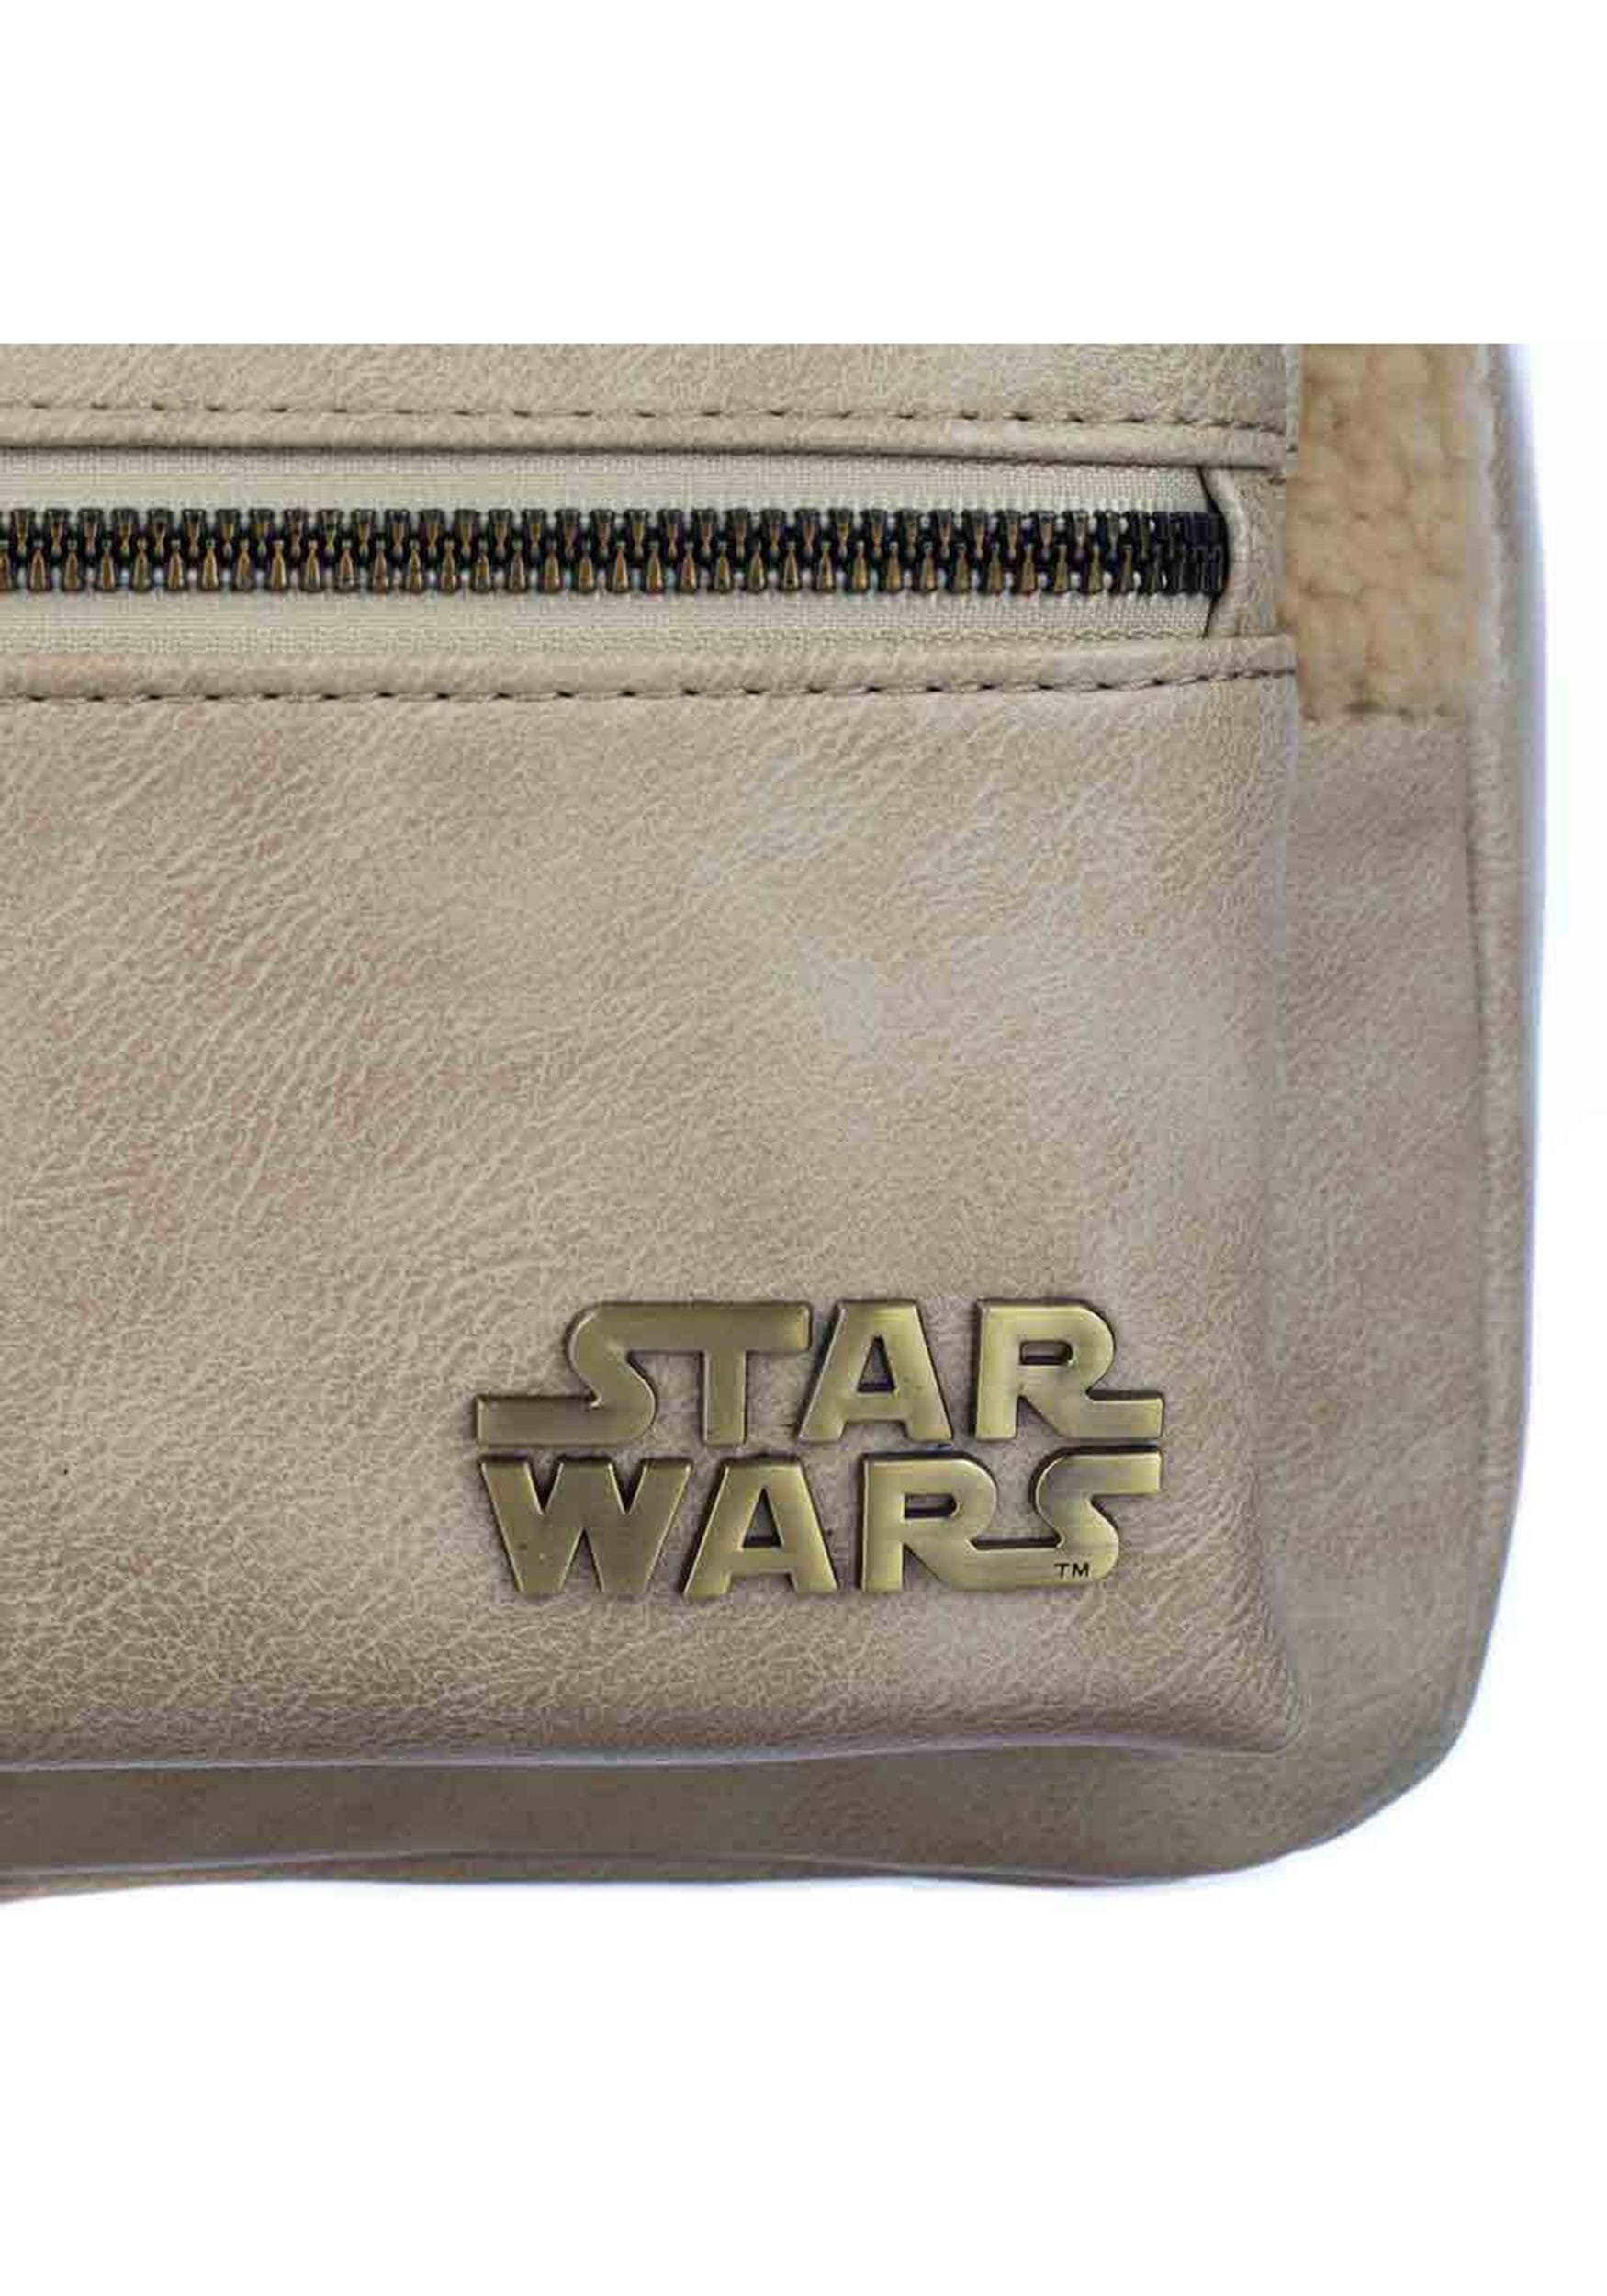 Grogu Mini Backpack From Star Wars The Mandalorian